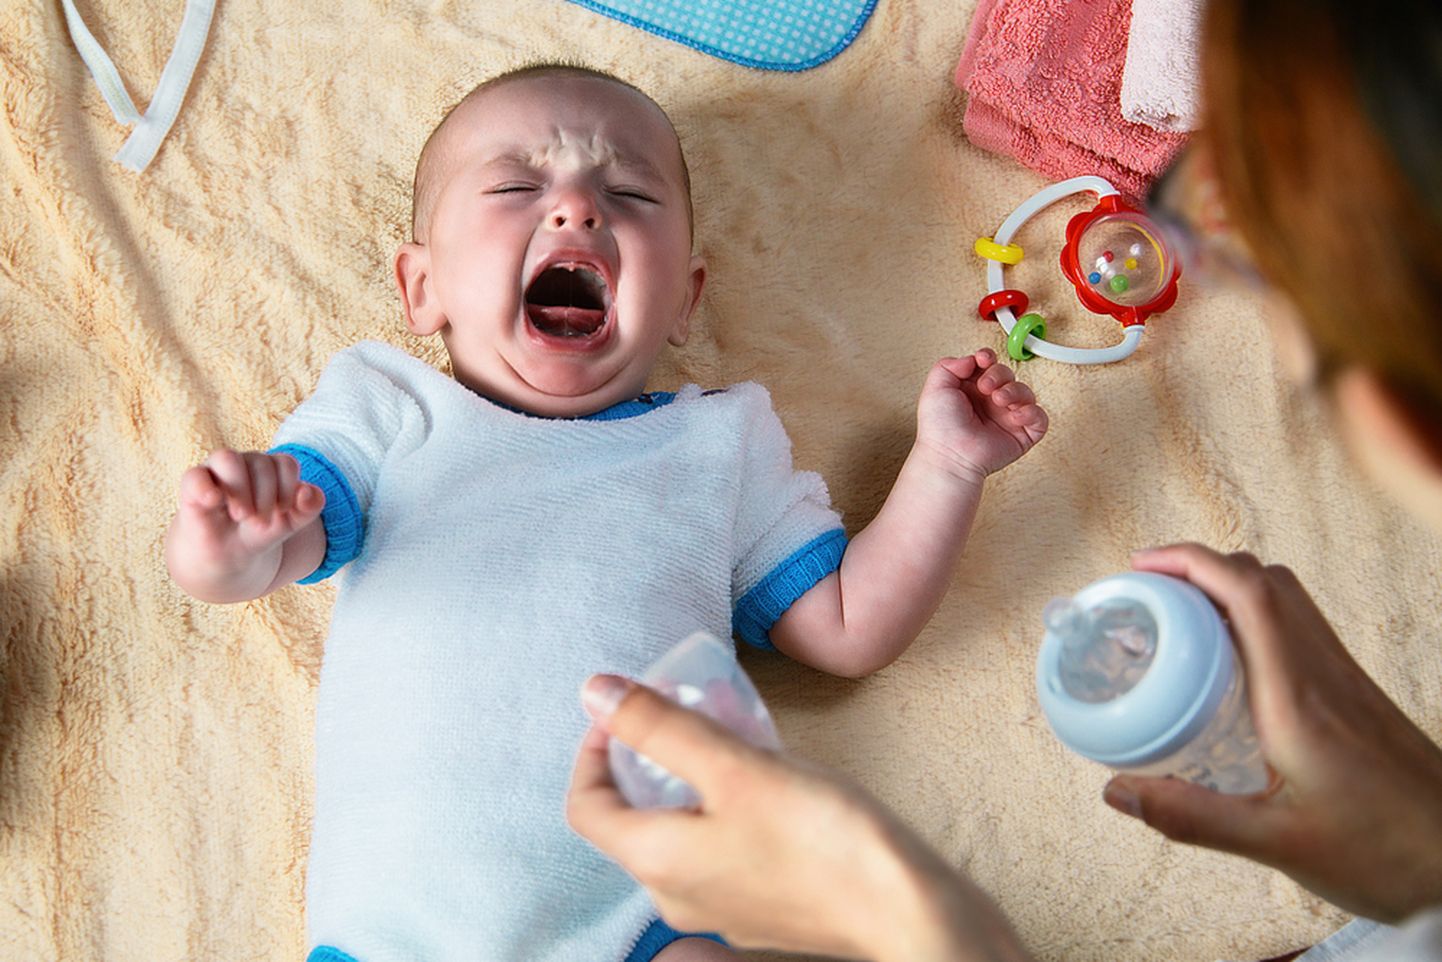 Kui näed unes nutvat beebit, siis võib-olla keelad endale midagi.